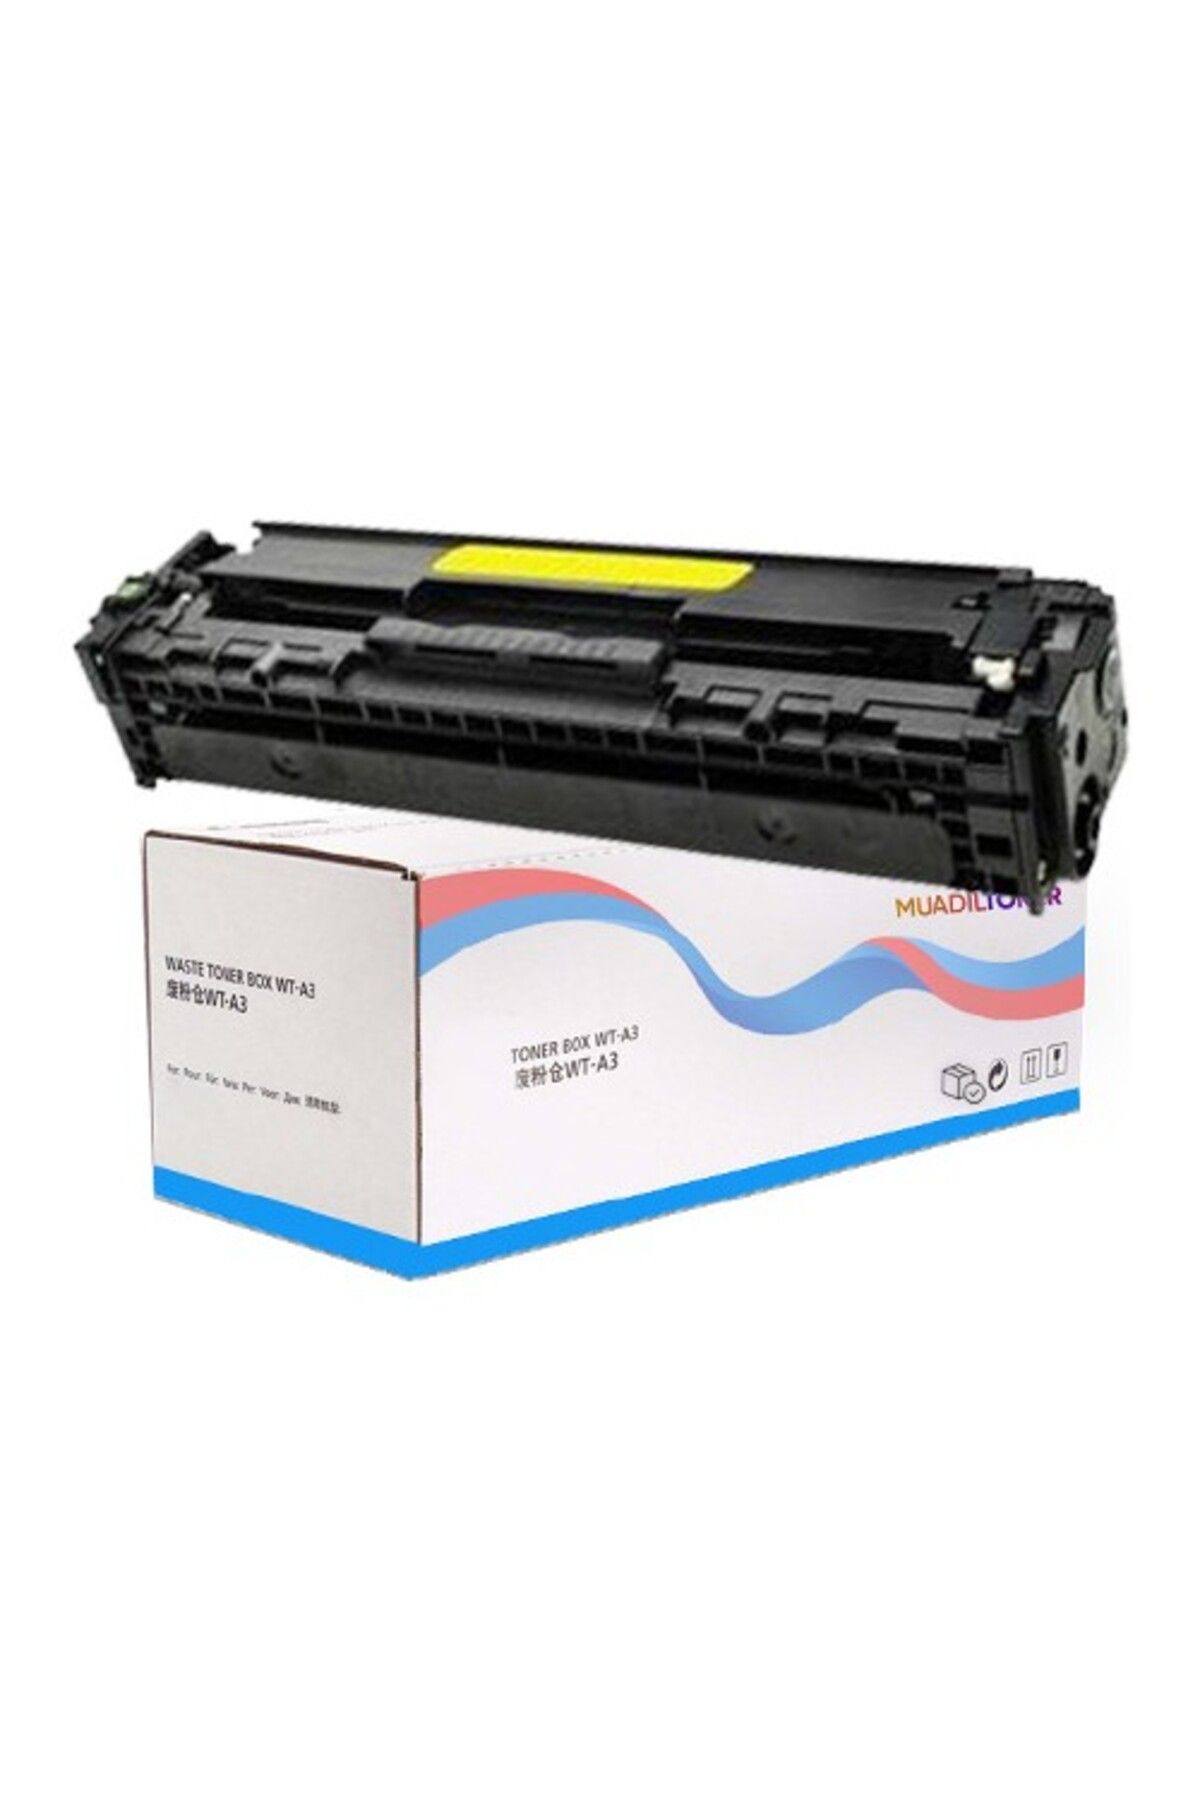 Colorprint Colorful Toner Hp Color Laserjet Cp1525n Yazıcı Uyumlu Muadil Toner Sarı 128a